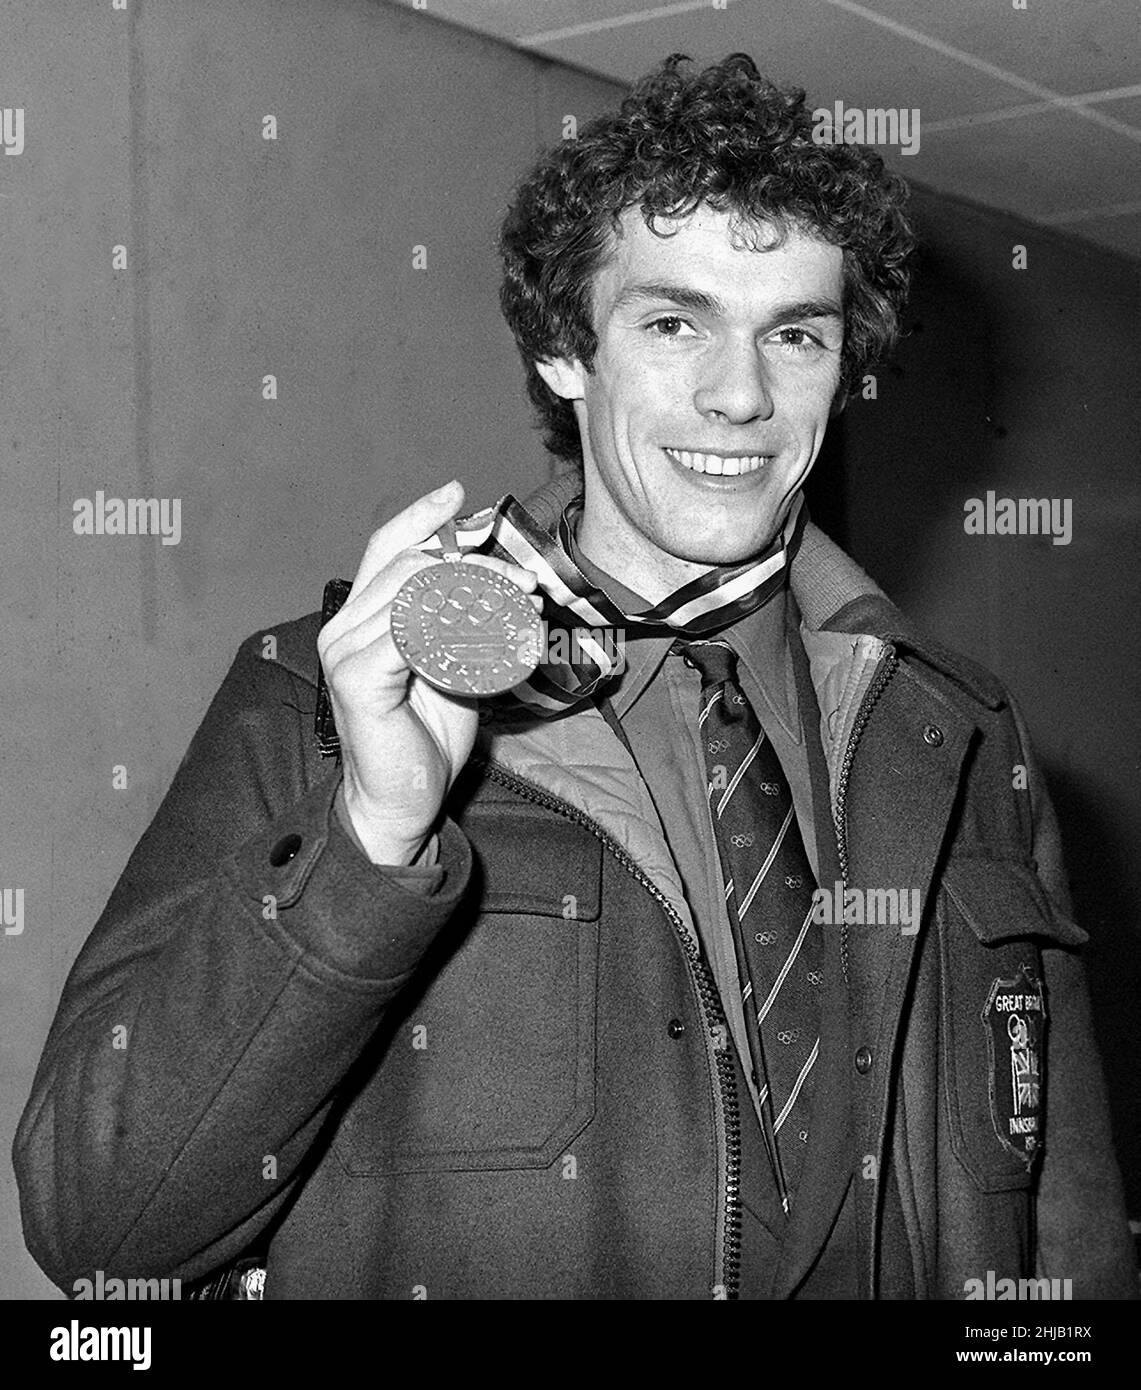 Photo du dossier du 16-02-1976 de First Briton pour gagner le championnat olympique de patinage artistique masculin, John Curry, 26, montre sa médaille d'or à l'aéroport d'Heathrow à son arrivée d'Innsbruck.Curry était au sommet de sa carrière en 1976 et a effectué trois sauts triples pour devenir le premier médaillé d'or de patinage artistique masculin de Grande-Bretagne sur son grand rival, Vladimir Kovalyov de Russie.Curry a également remporté des titres mondiaux et européens la même année, avant de passer brusquement au niveau professionnel.Quatre ans plus tard, son compagnon britannique, Robin cousins, lui succéda comme champion du patinage artistique olympique masculin.Date de publication : vendredi Ja Banque D'Images